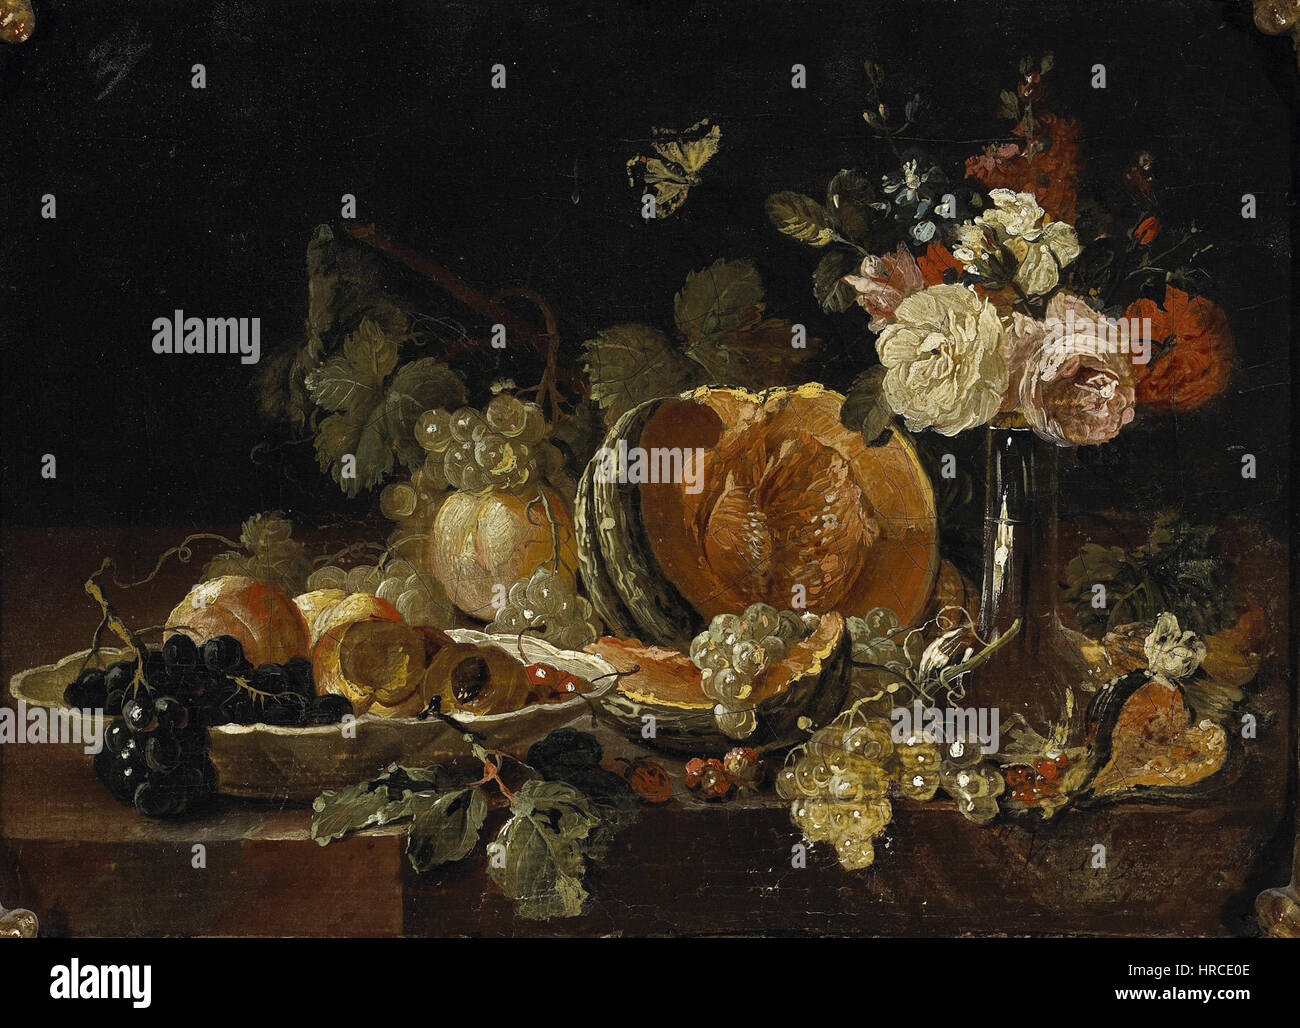 Johann Amandus Winck - Stilleben mit Blumen in einer Glasvase, einer limone ecc. Foto Stock